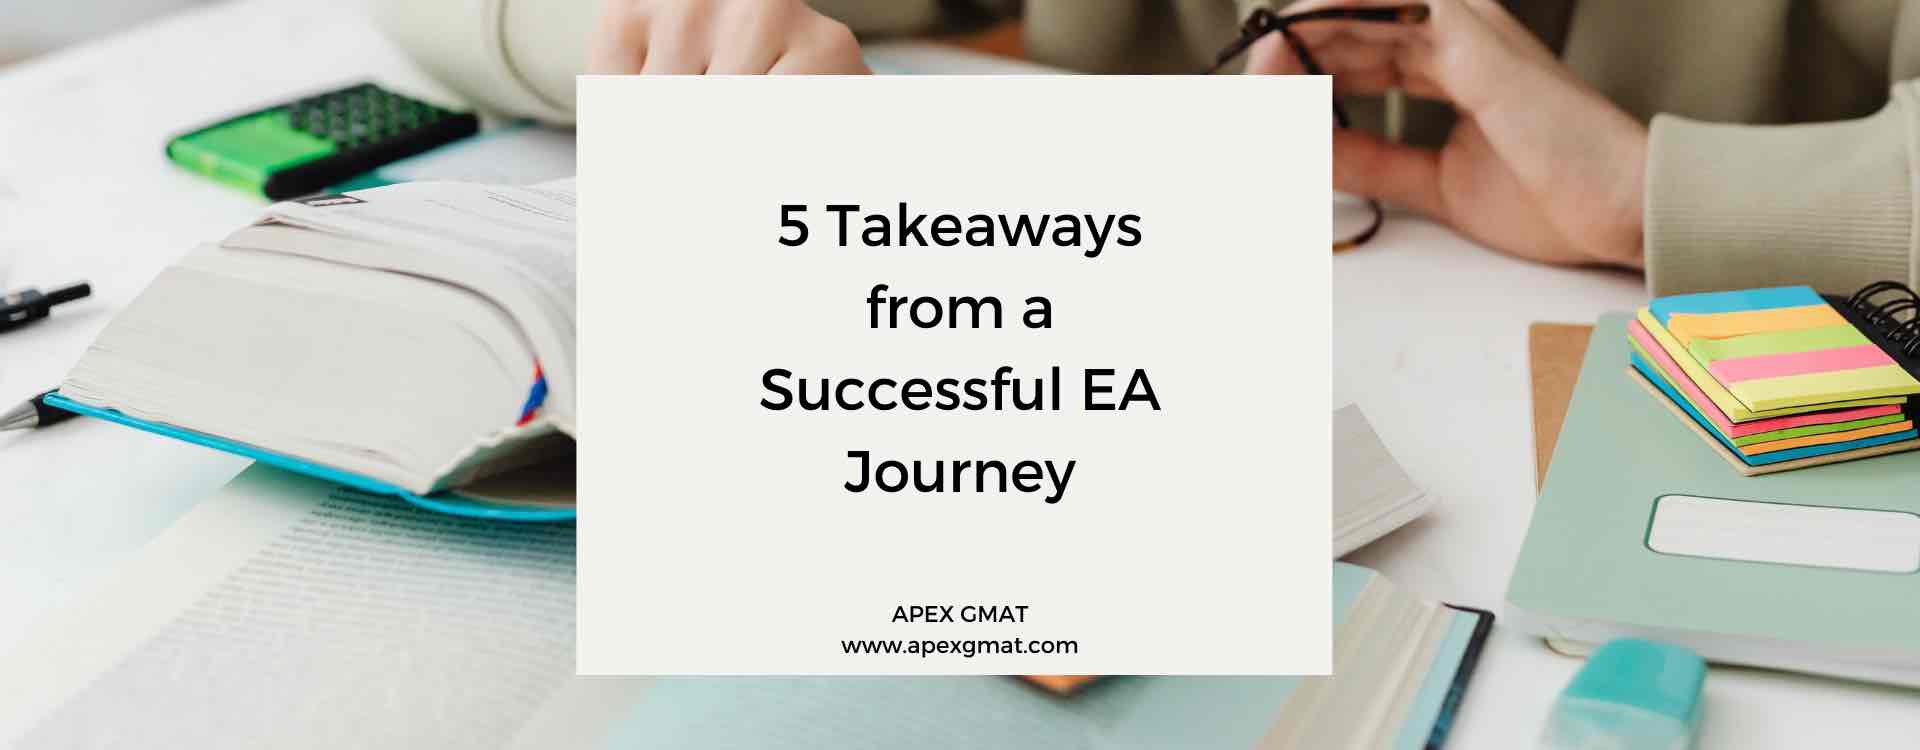 5 Takeaways from a Successful EA Journey